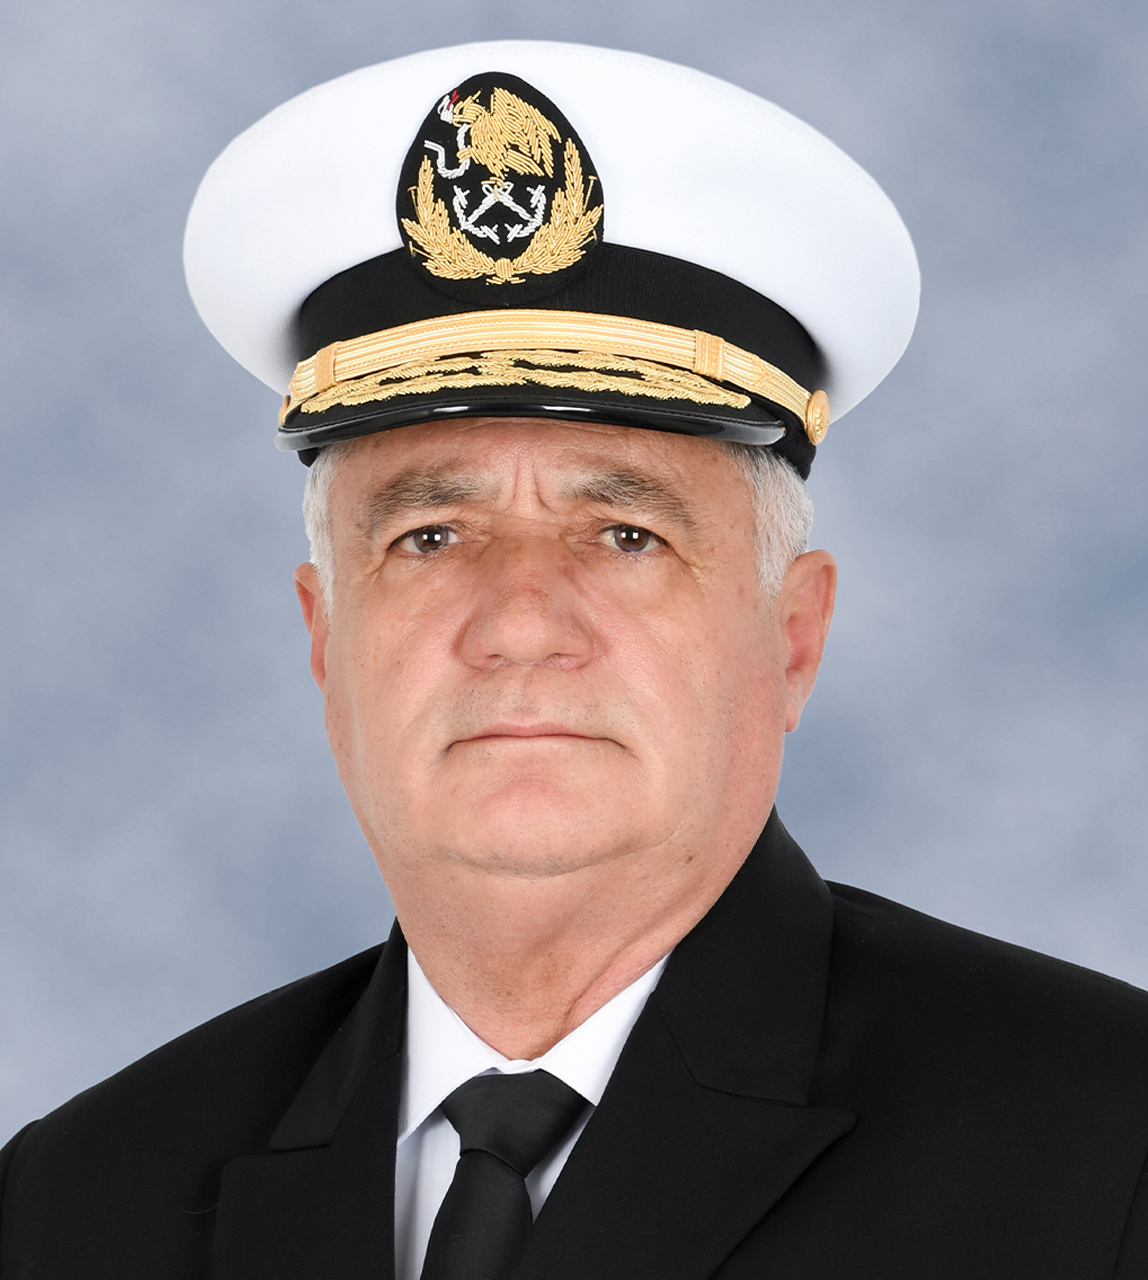 Almirante
Juan José Padilla Olmos
Jefe de Estado Mayor General de la Armada